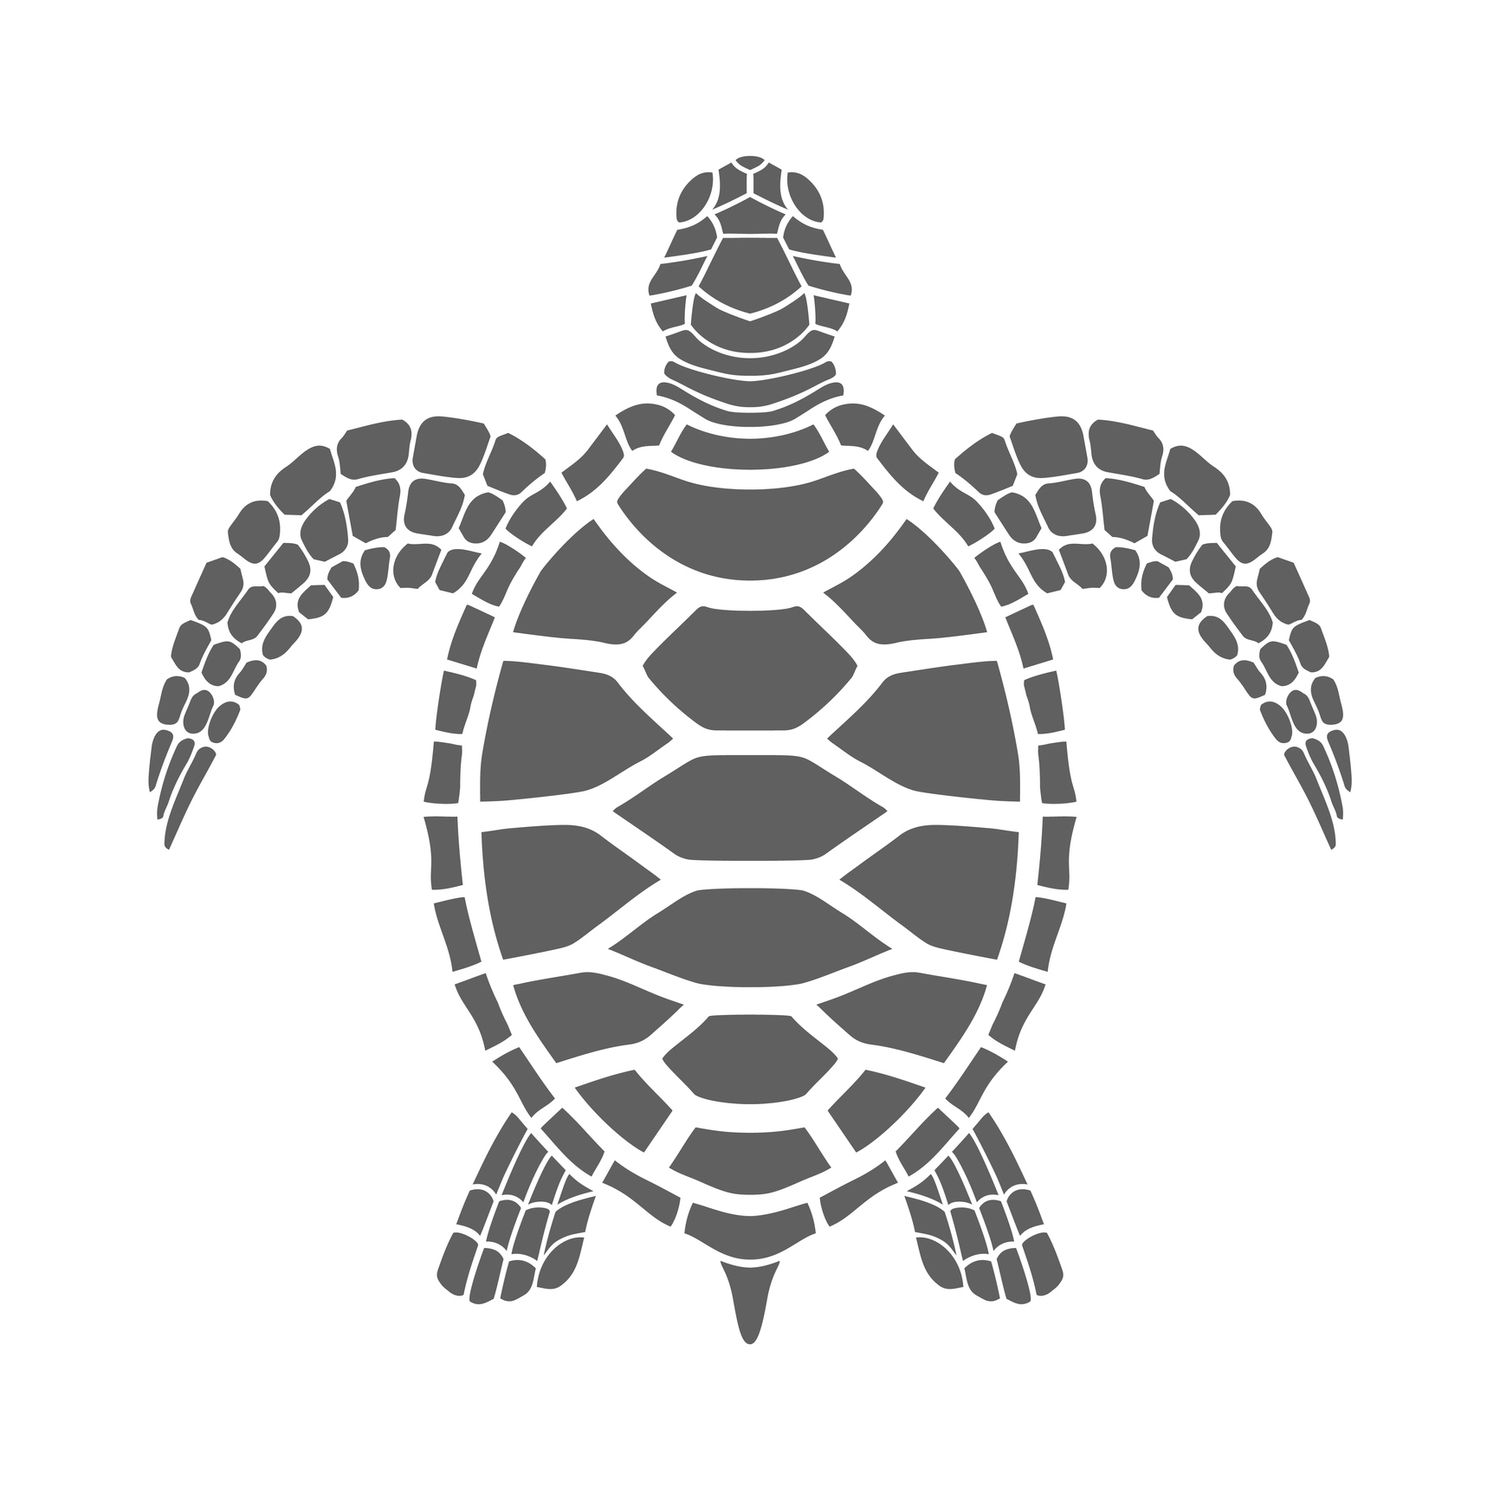 Icône tortue de mer. Symbole gris isolé sur fond blanc.